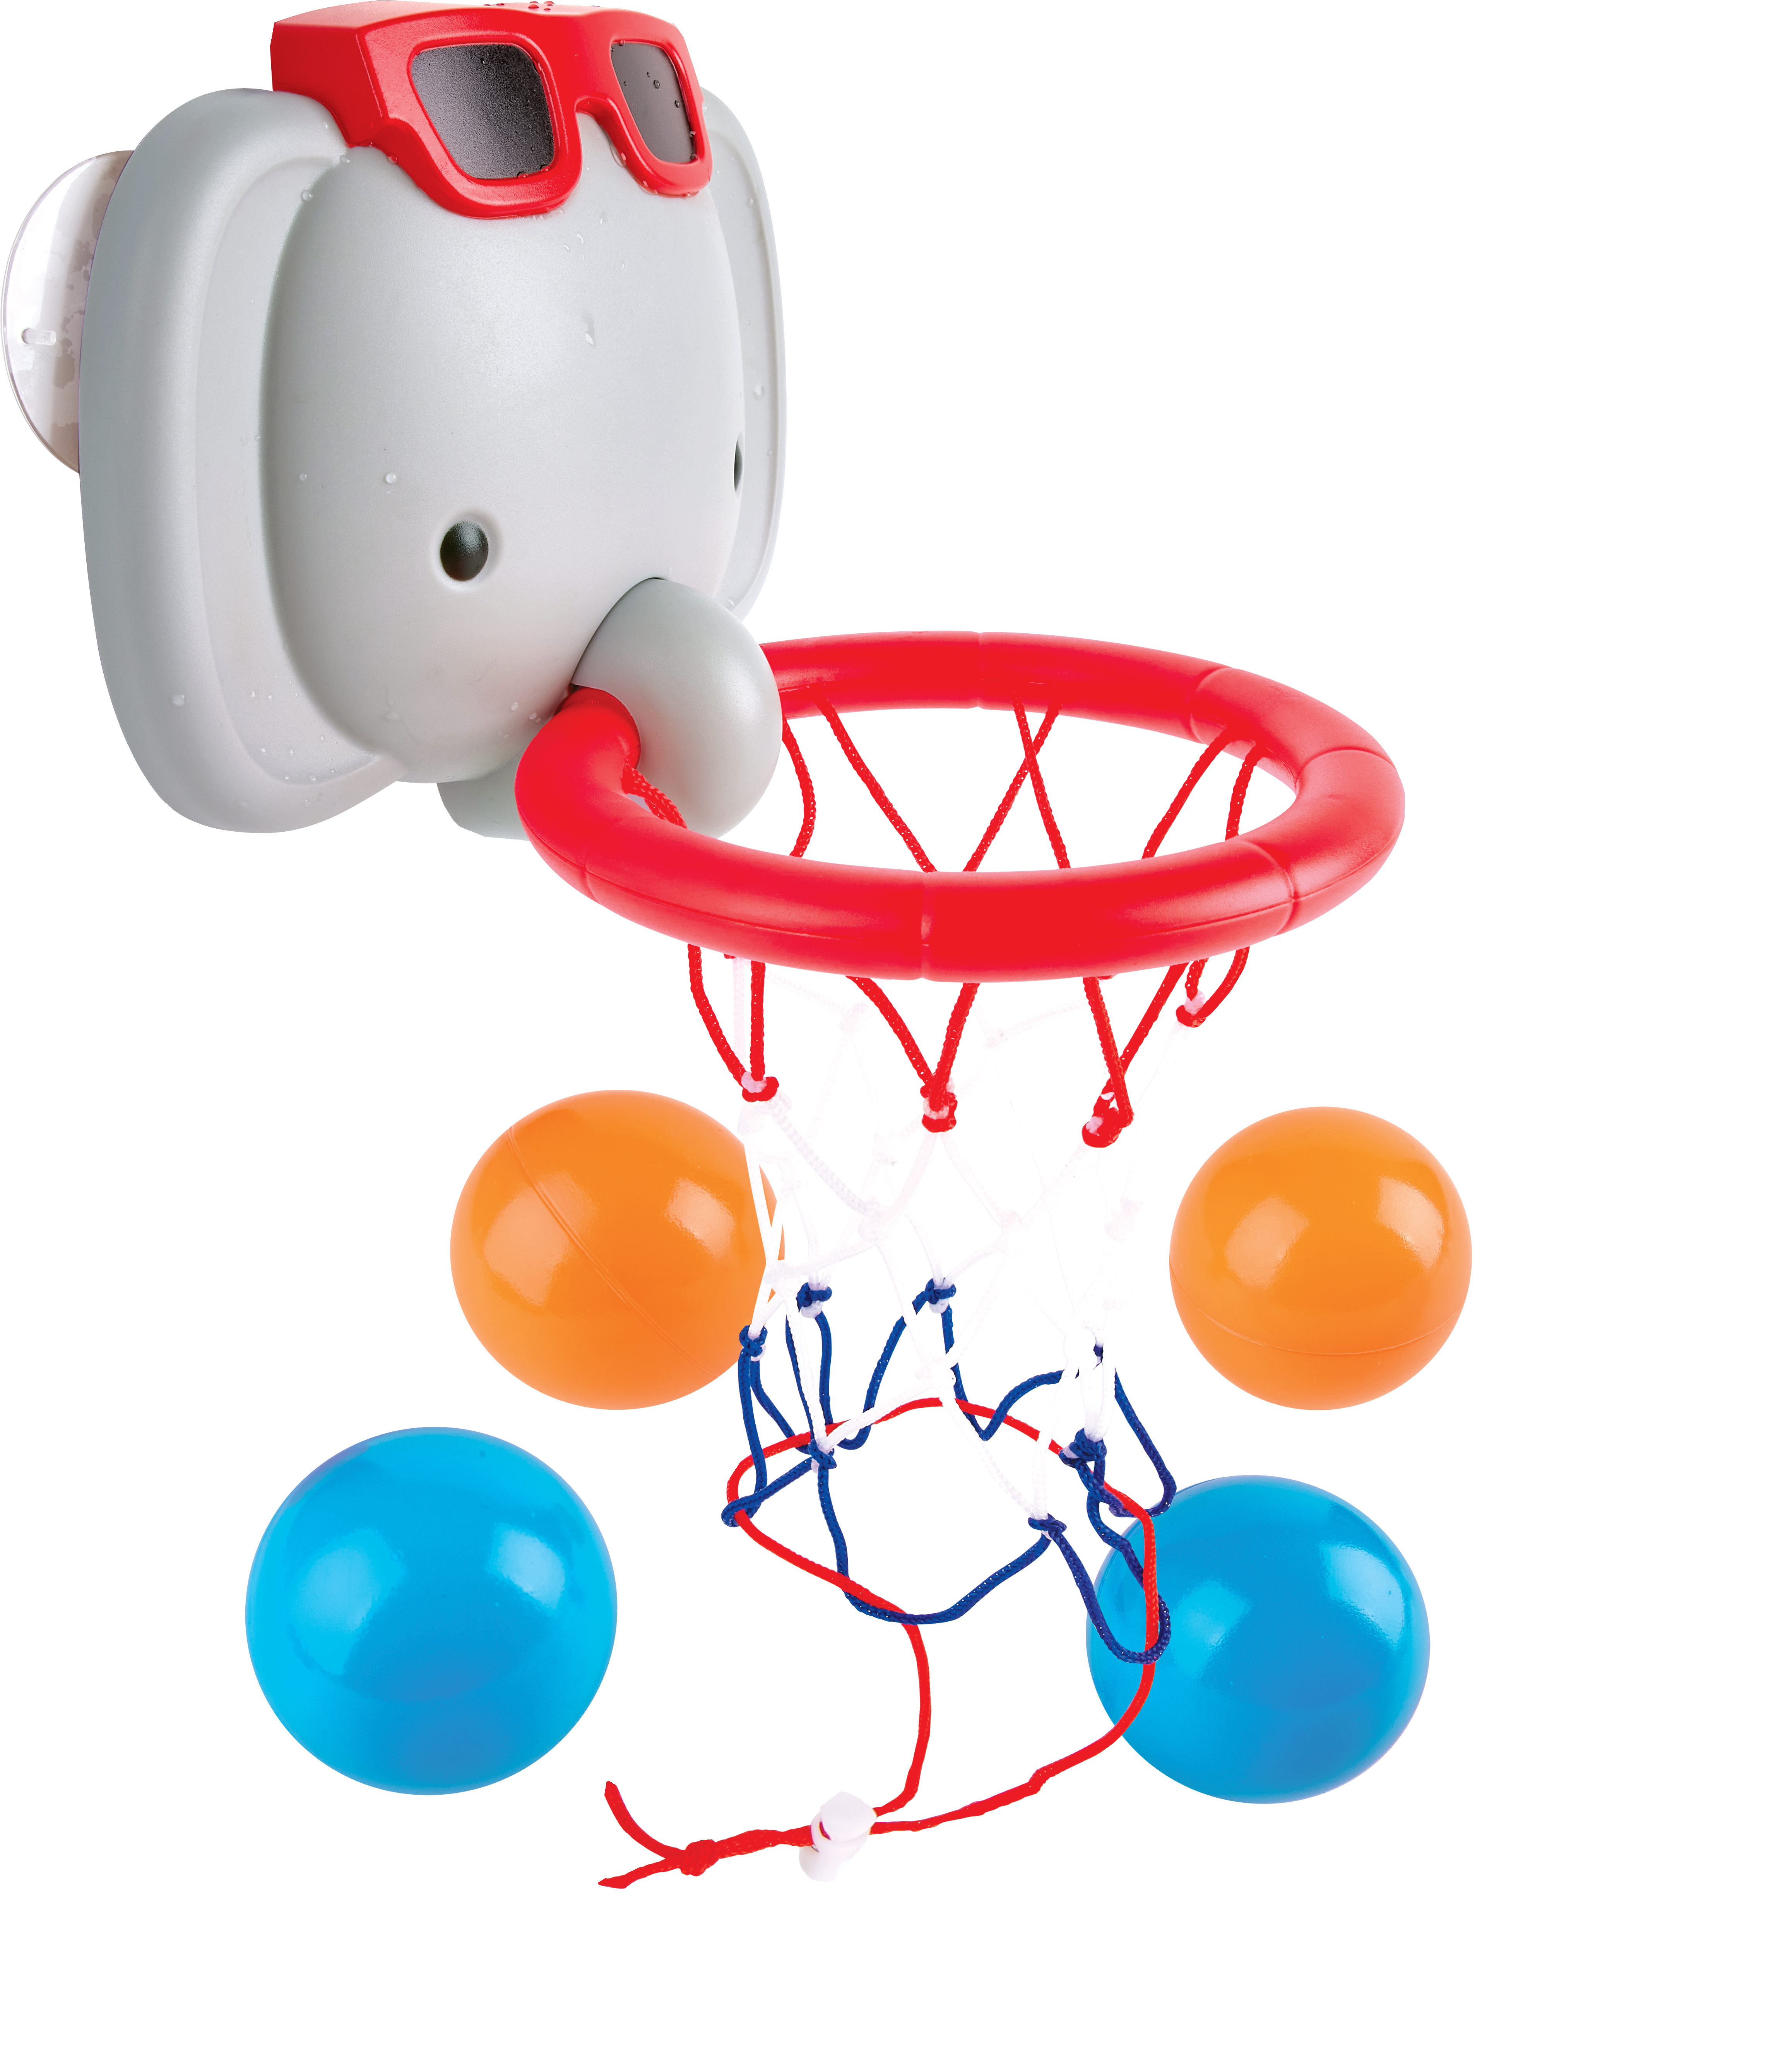 HAPE Spielwaren Badespaß mit Spielzeug Elefanten-Basketballkorb Badespielzeug dem Kleinkind bayw1120